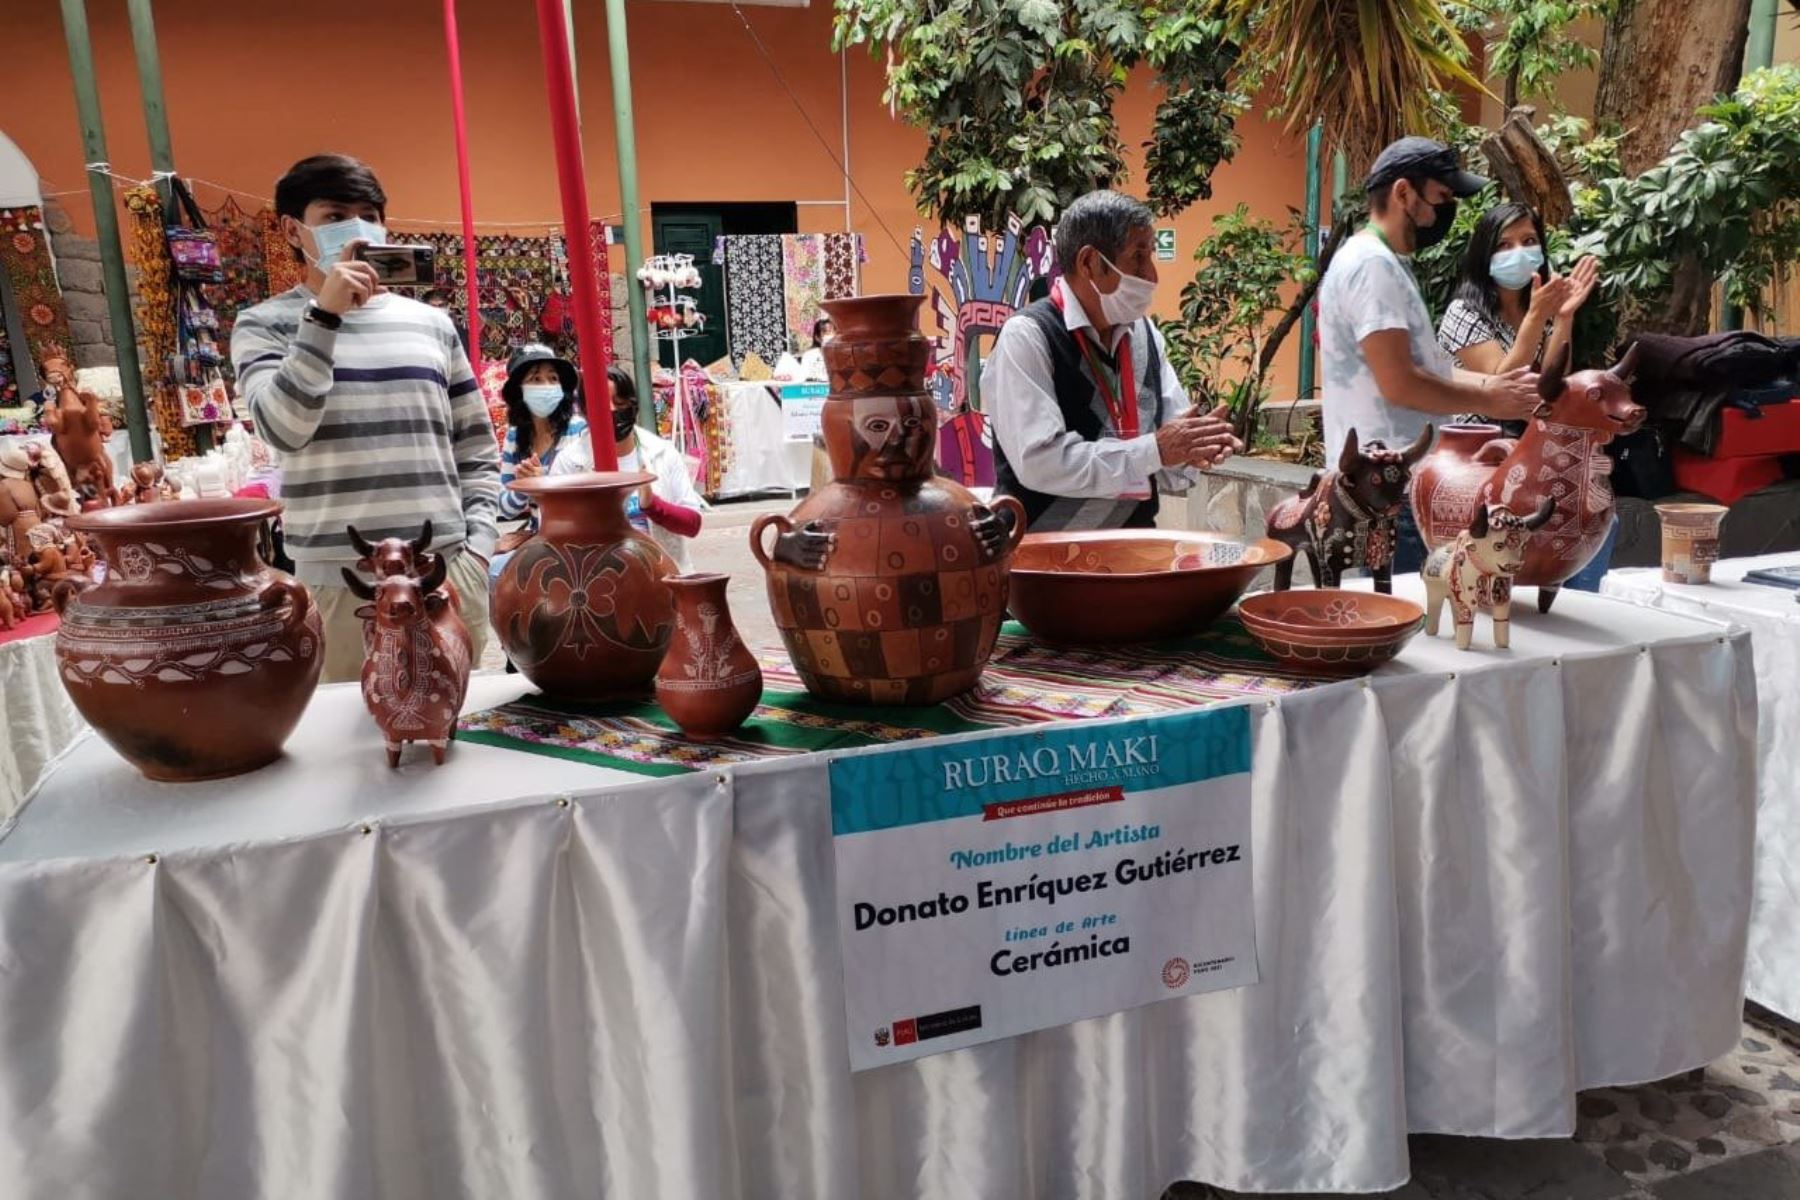 Feria Ruraq maki se desarrolla en formato presencial en Huamanga, capital de la región Ayacucho. ANDINA/Difusión